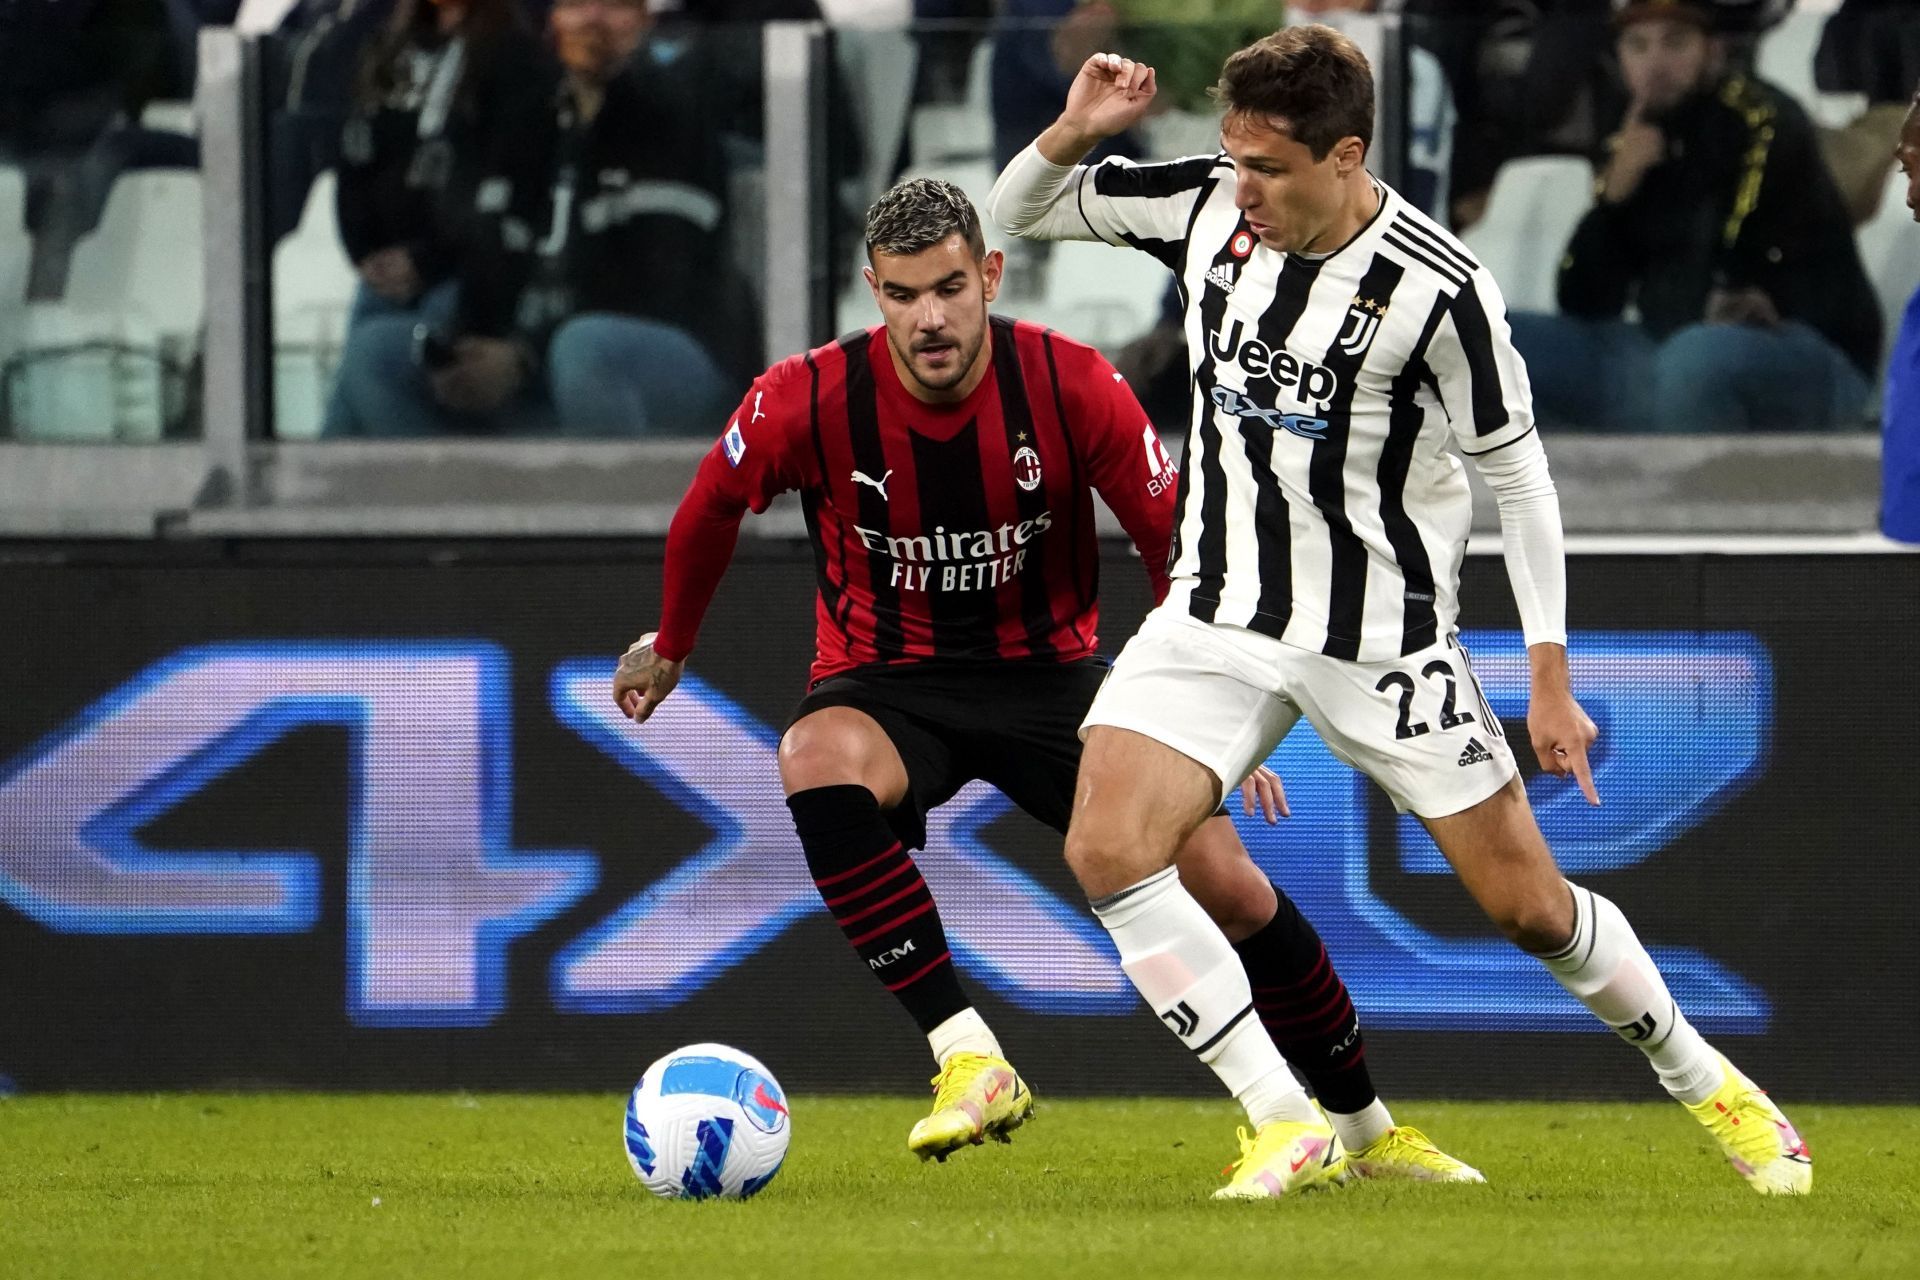 Juventus take on AC Milan this weekend